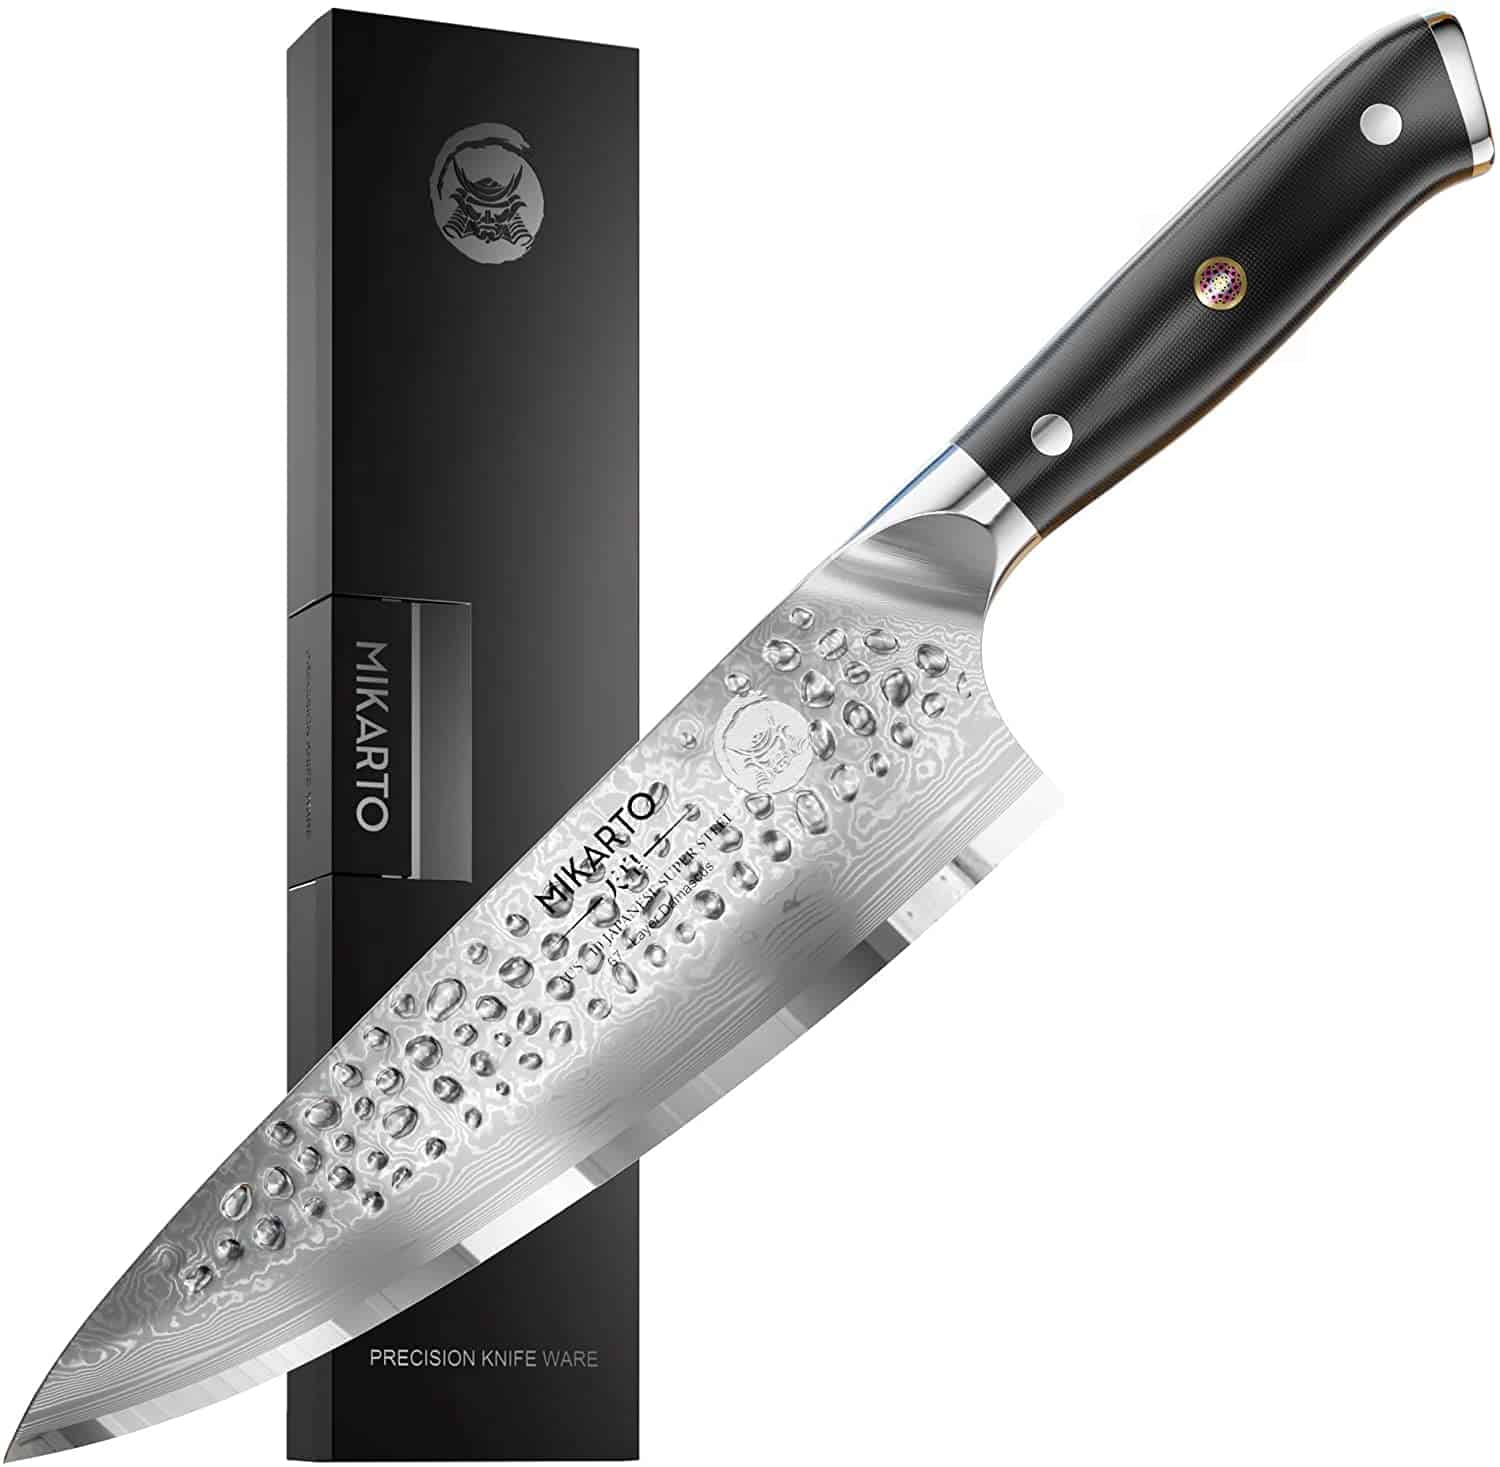 Լավագույն AUS 10 ճապոնական պողպատե դանակ խոհարարների համար - Mikarto Japanese Chef Knife 8 Inch Gyuto